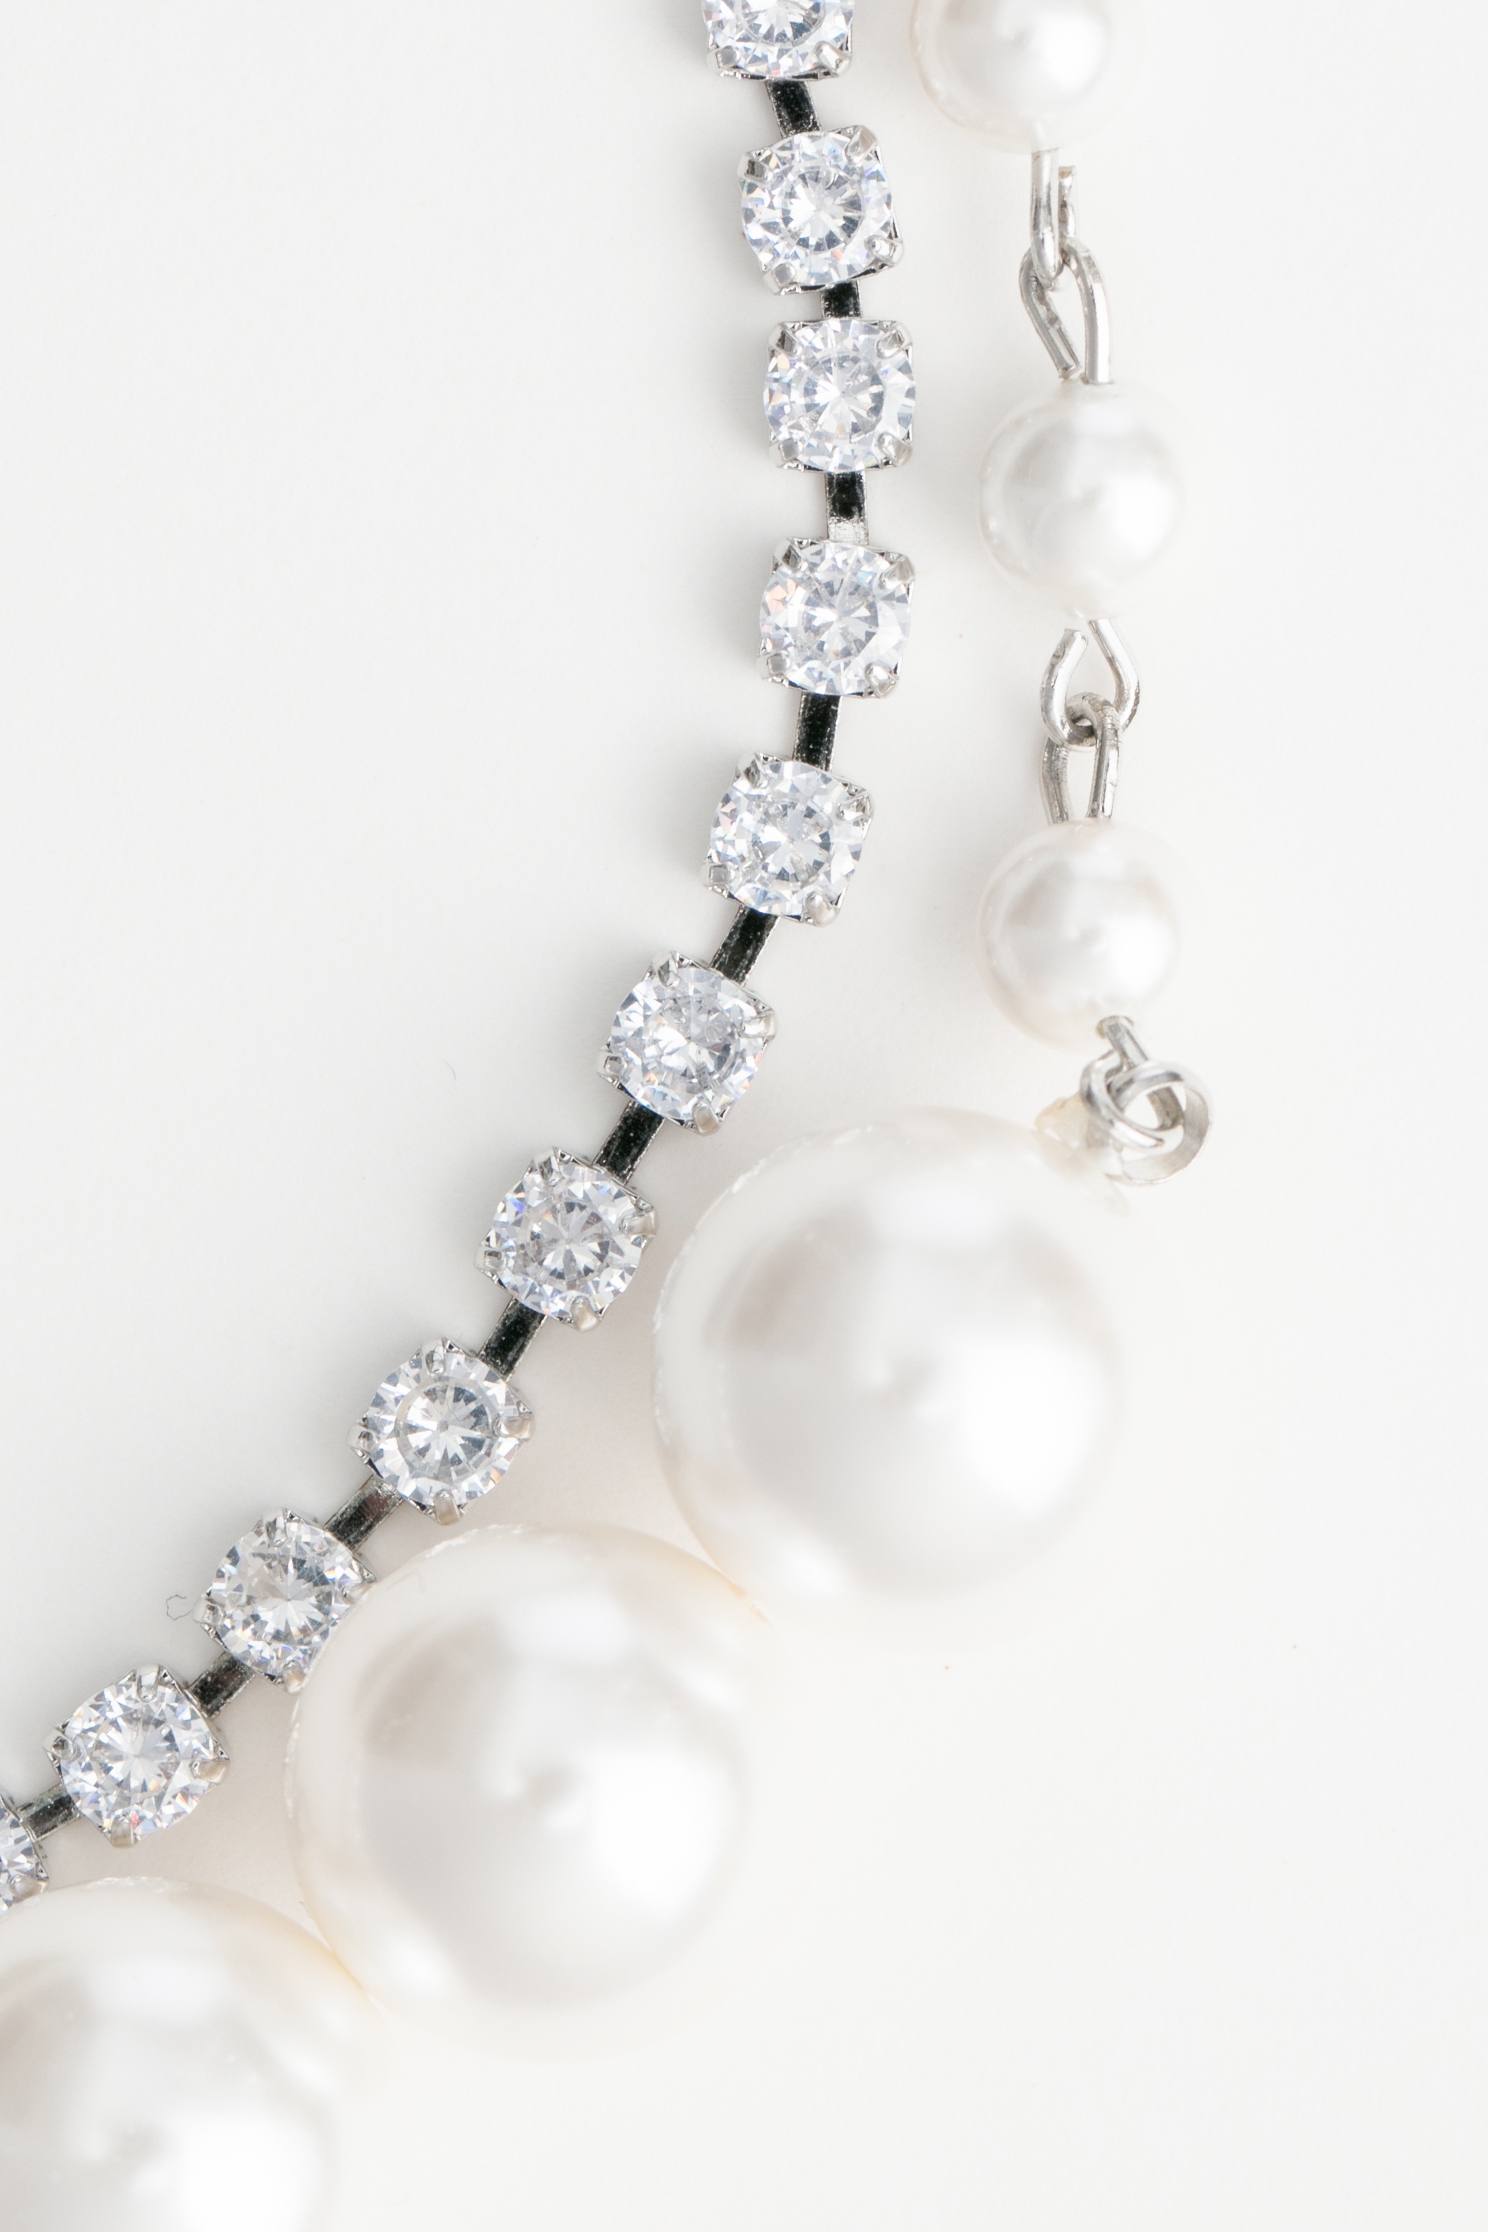 雙層鑽飾珍珠短項鍊雙層鑽飾珍珠短項鍊,珍珠,秋冬穿搭,項鍊,飾品